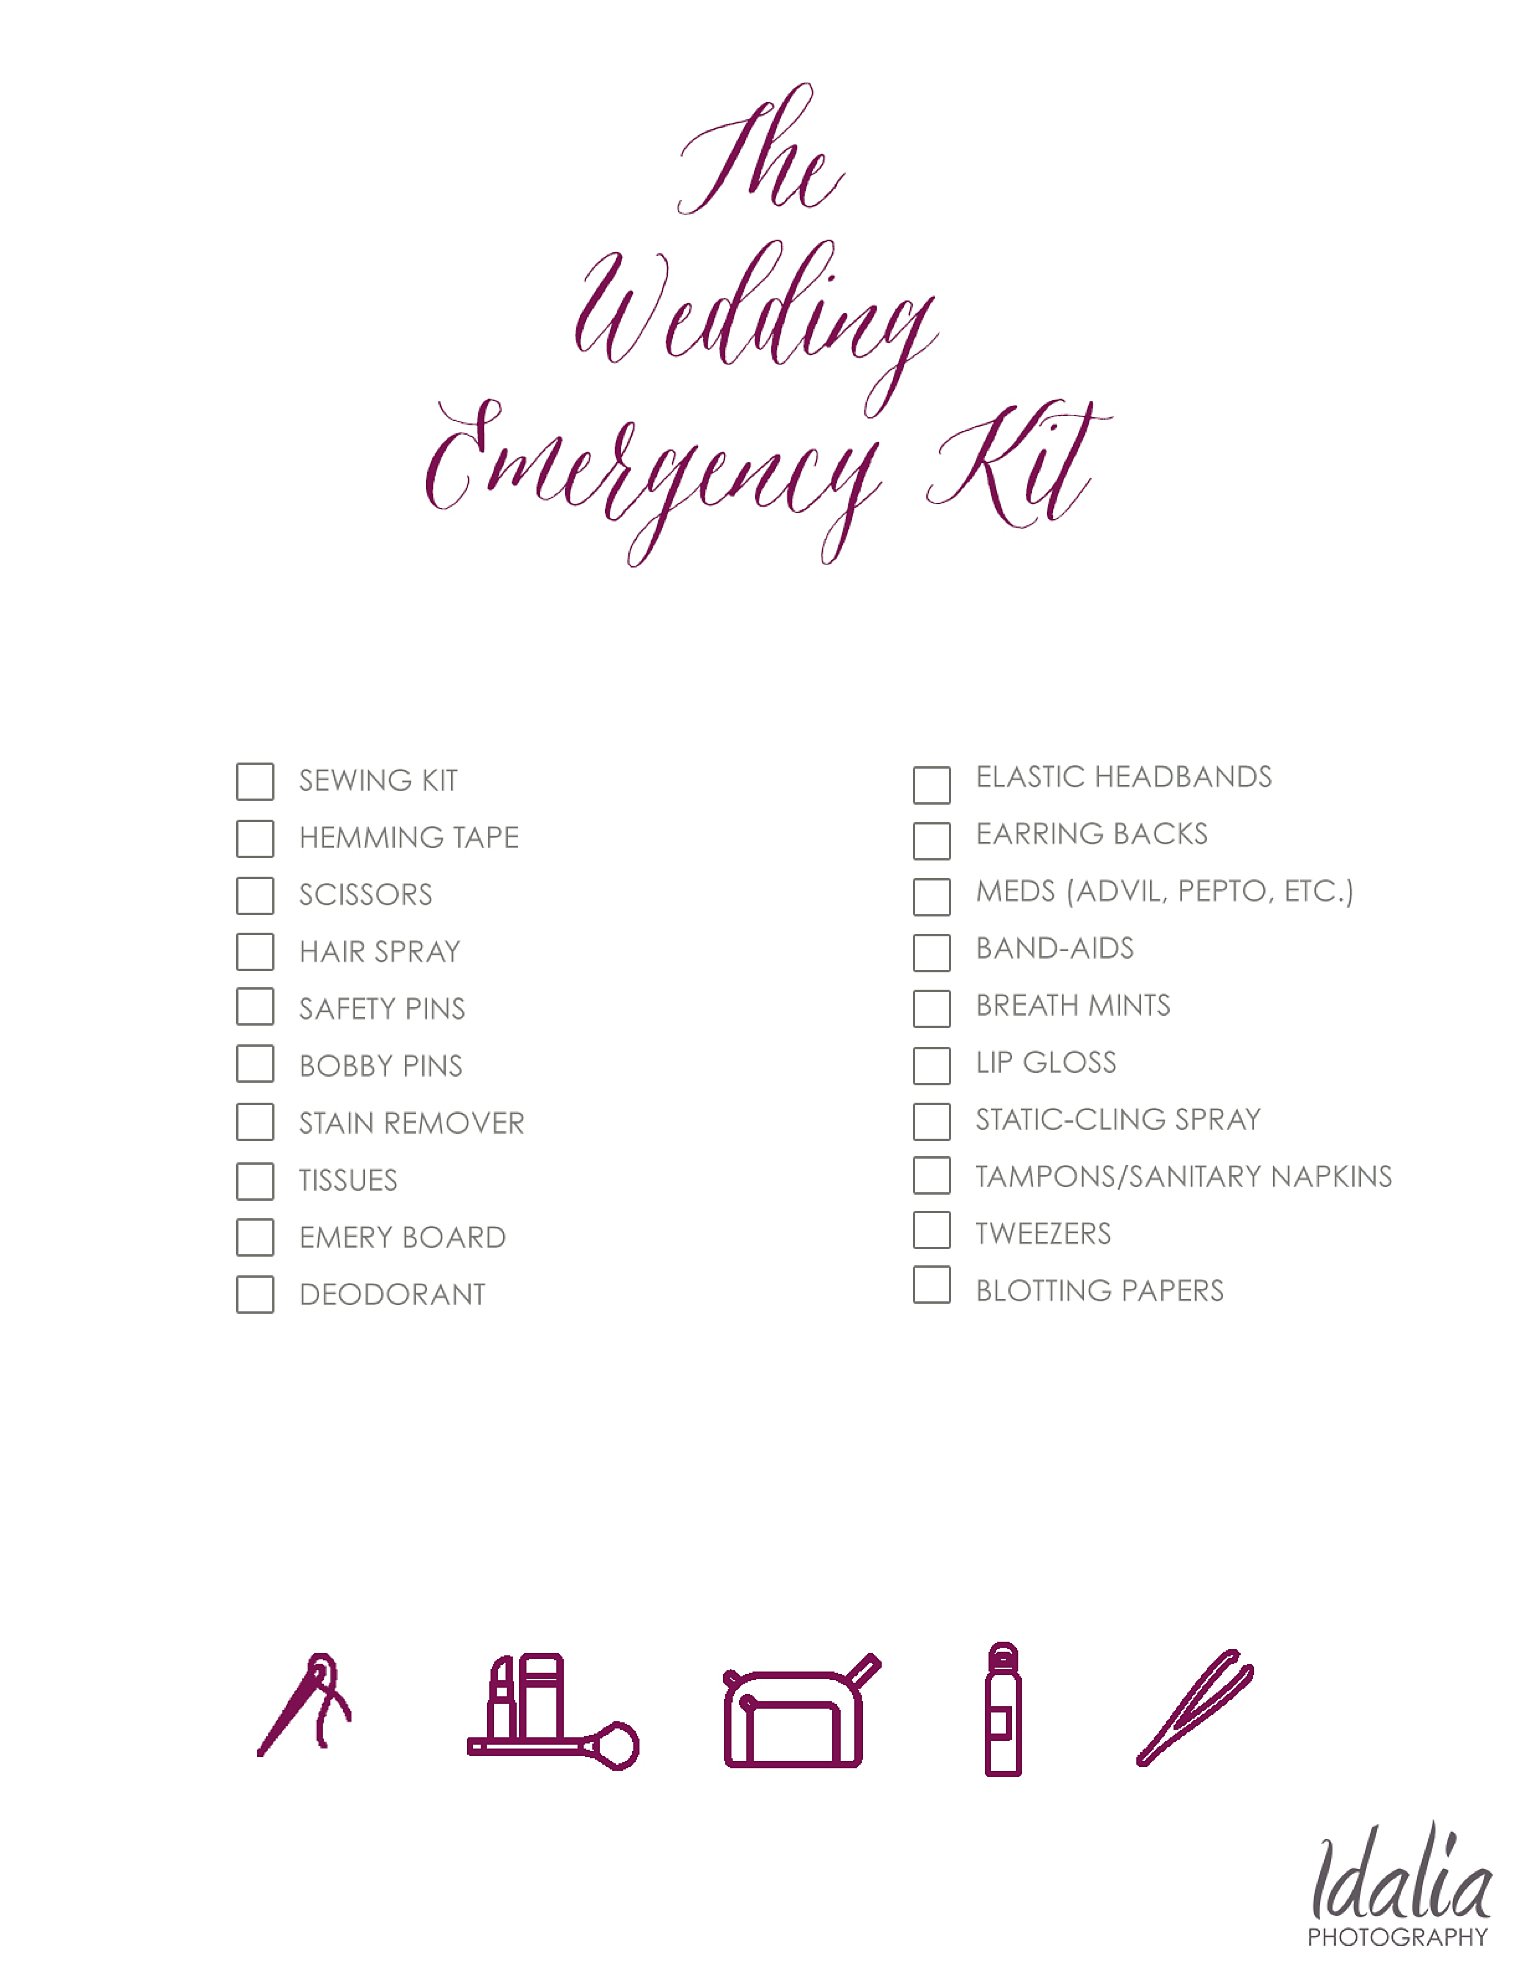 The Wedding Day Emergency Kit Checklist